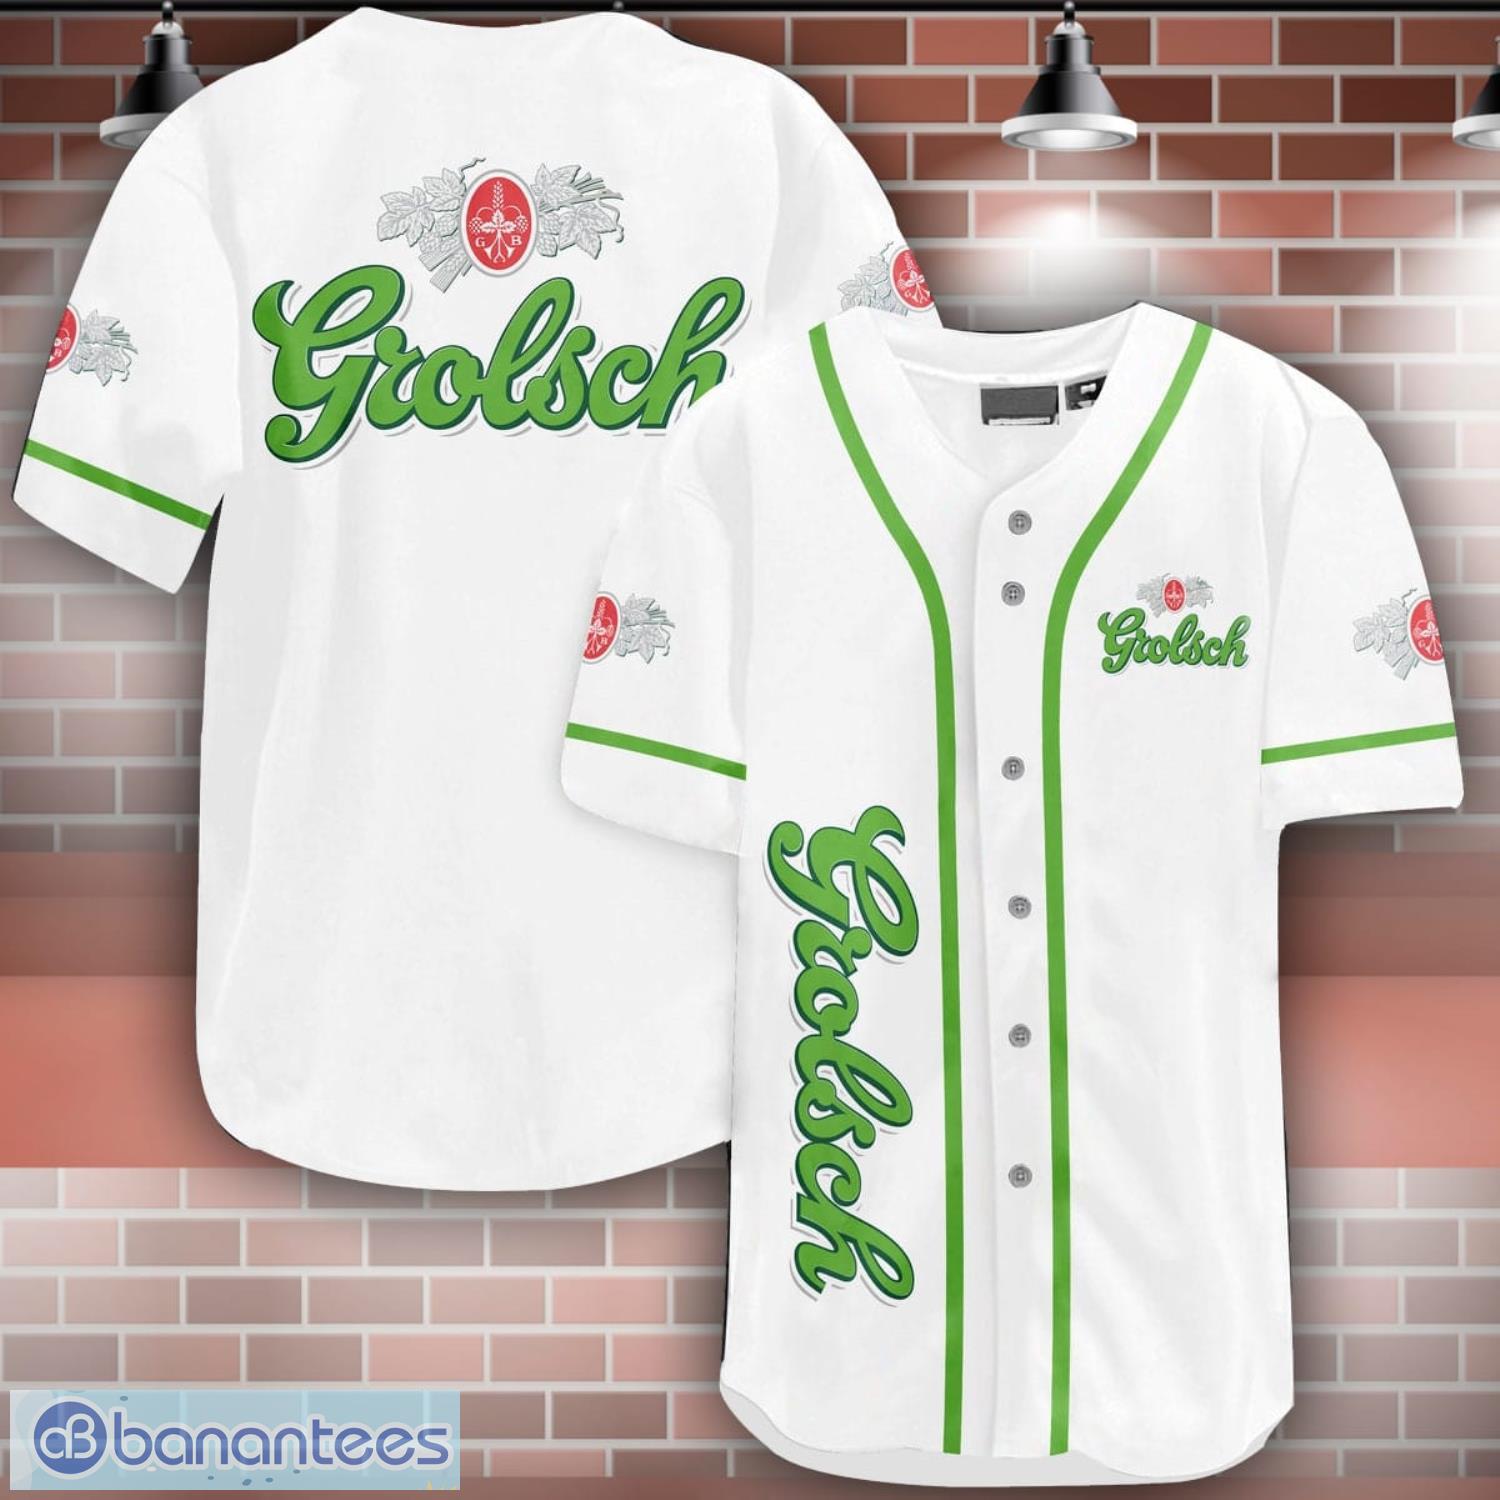 Grolsch Lager Baseball Jersey Shirt Best Gift For Men And Women